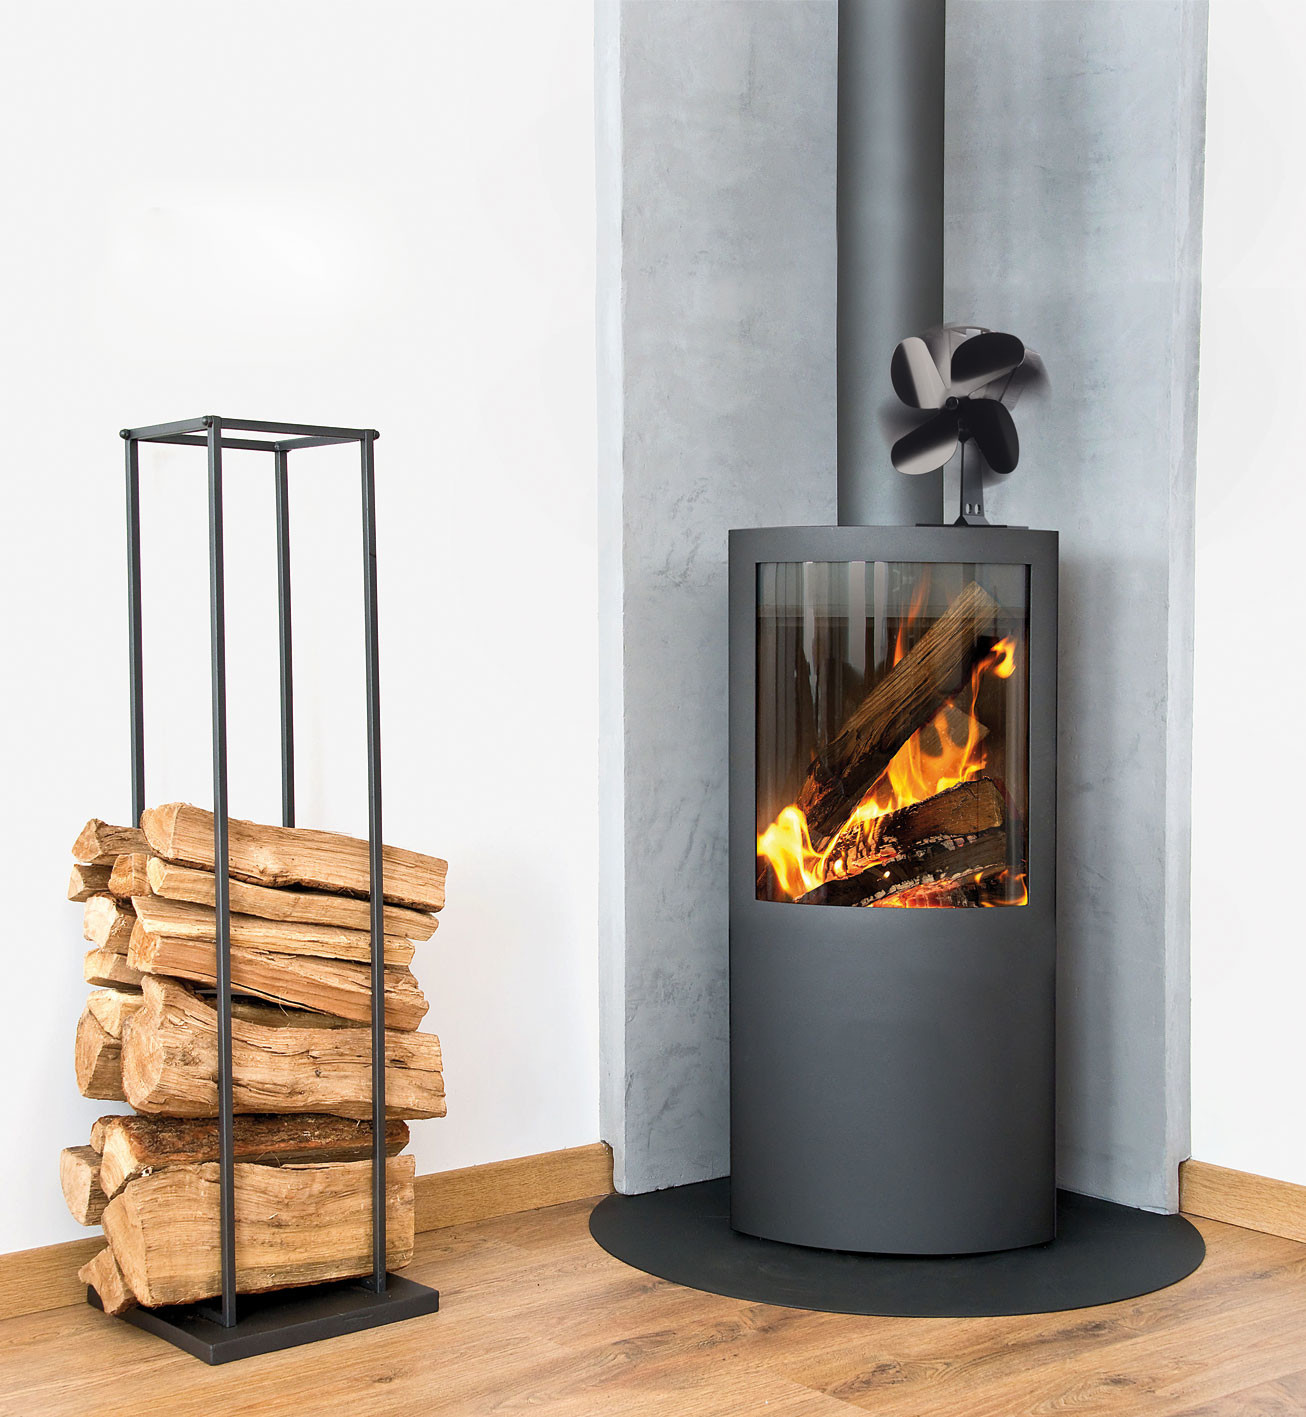 Ce ventilateur poêle à bois en promo va révolutionner votre chauffage :  Vous allez faire des économies